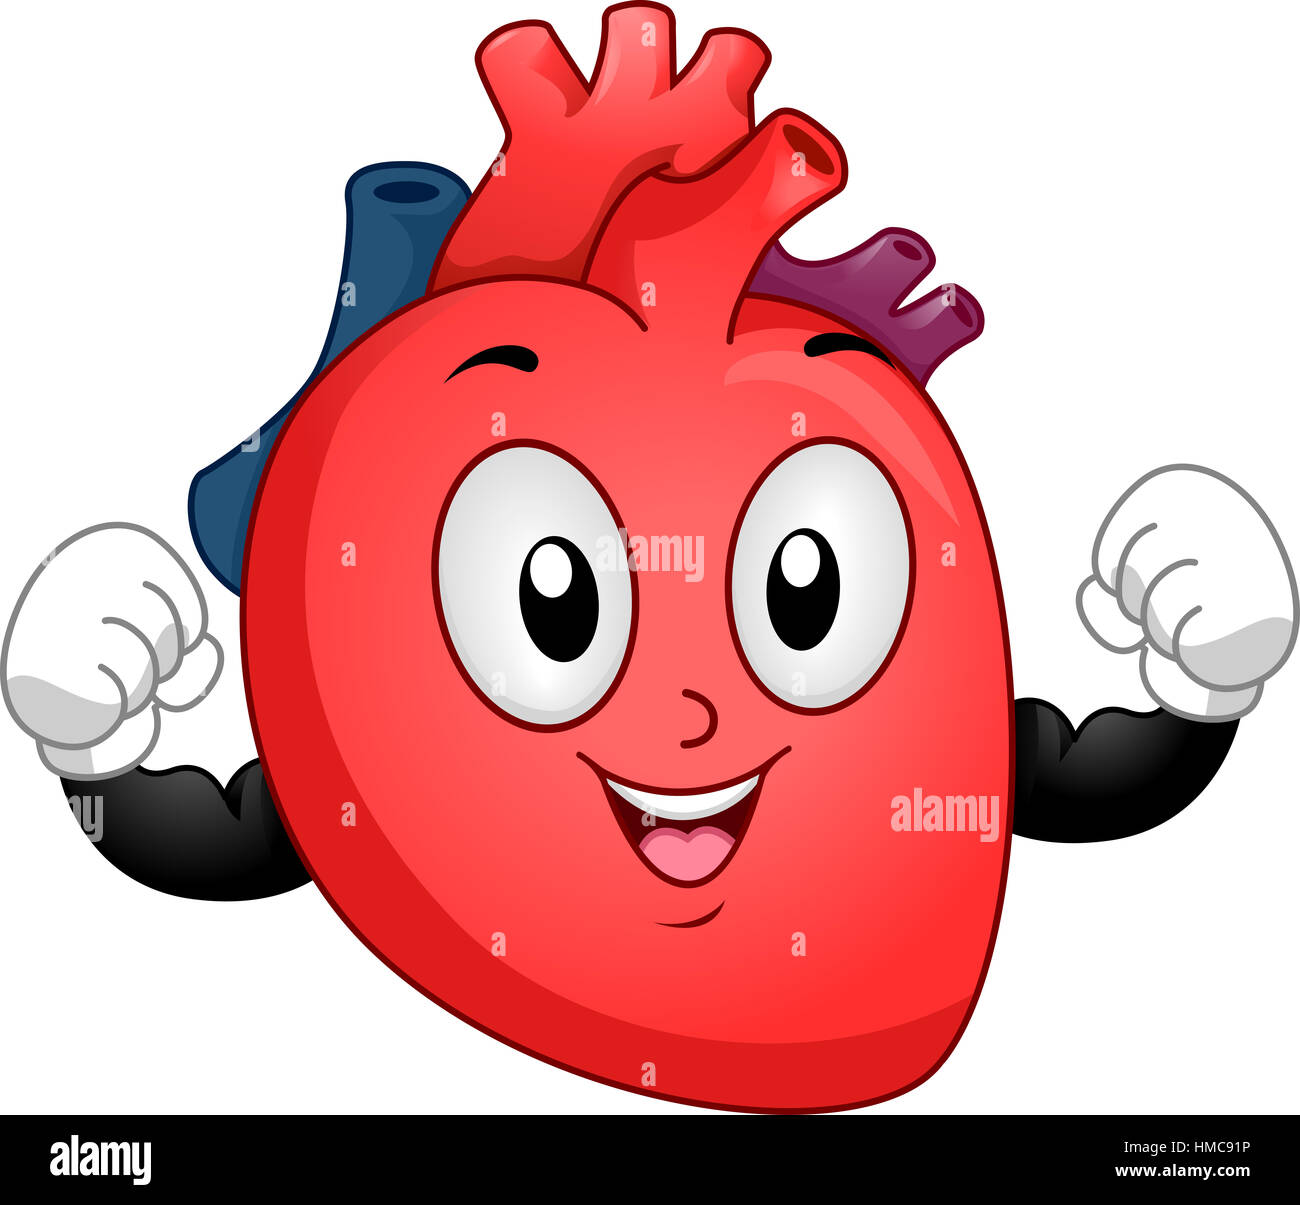 Il Mascot illustrazione di un soggetto umano sano cuore flessione del suo bicipite per mostrare la forza Foto Stock